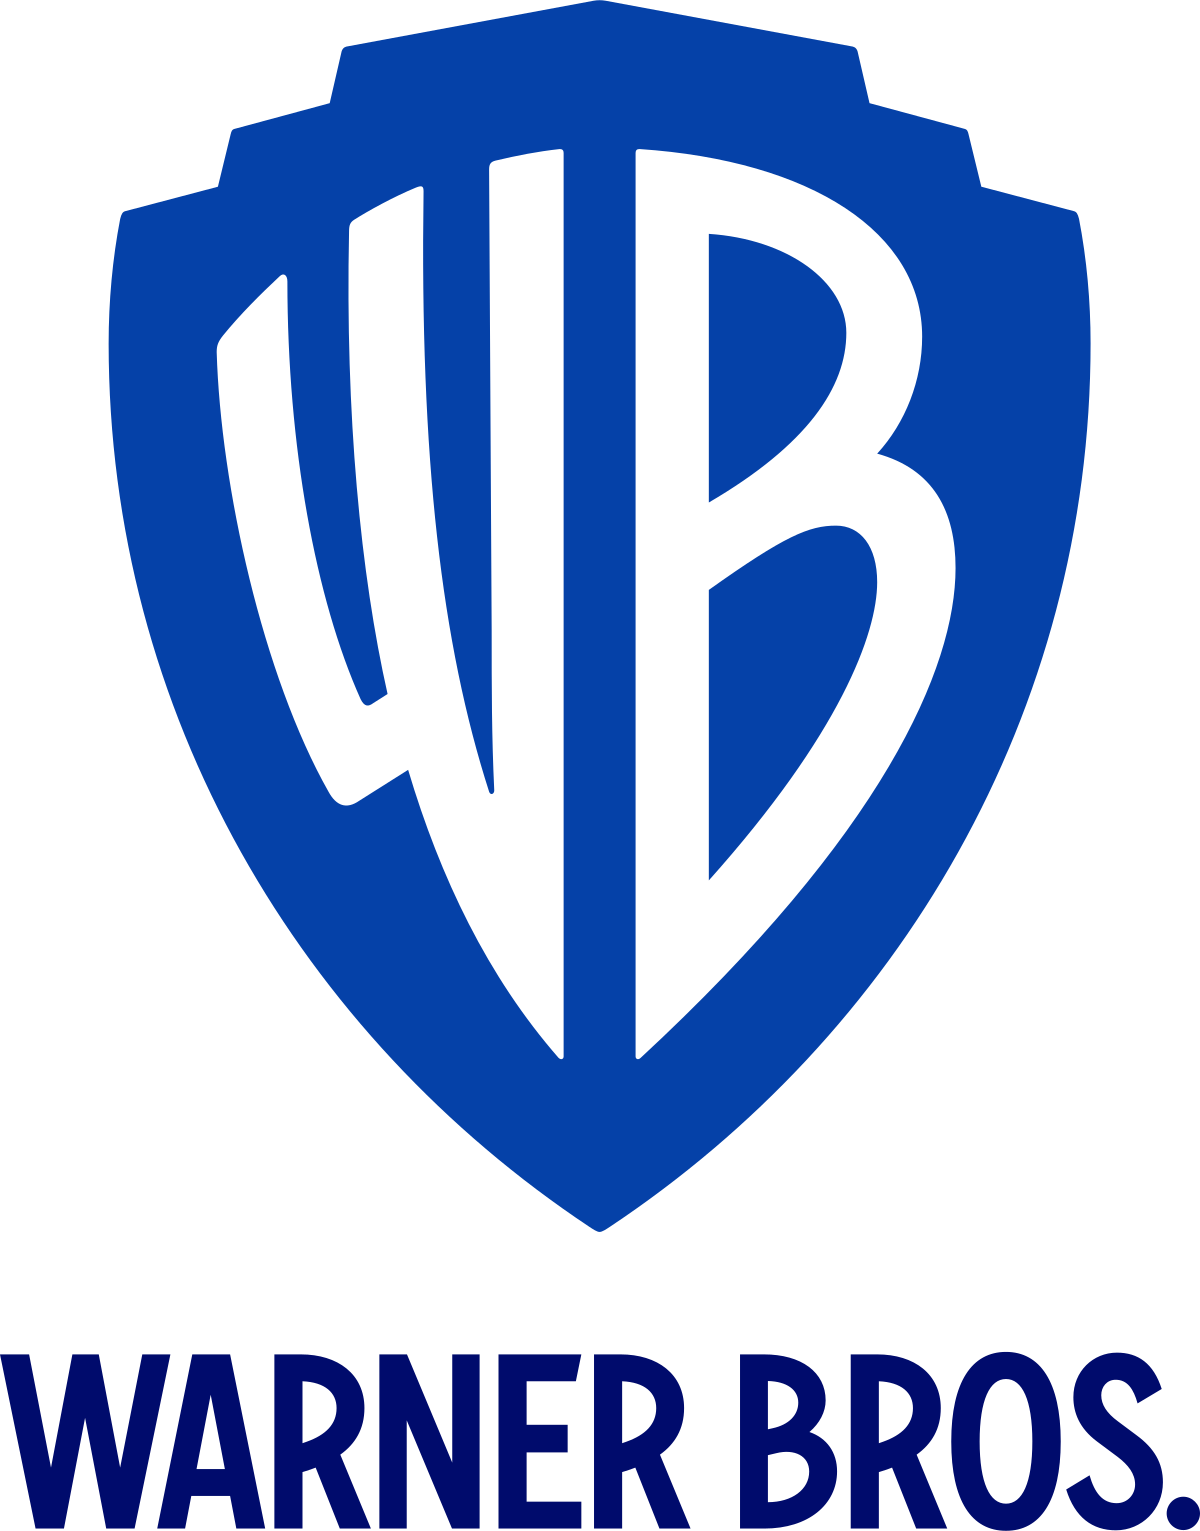 Warner_Bros._(2019)_logo.svg.png